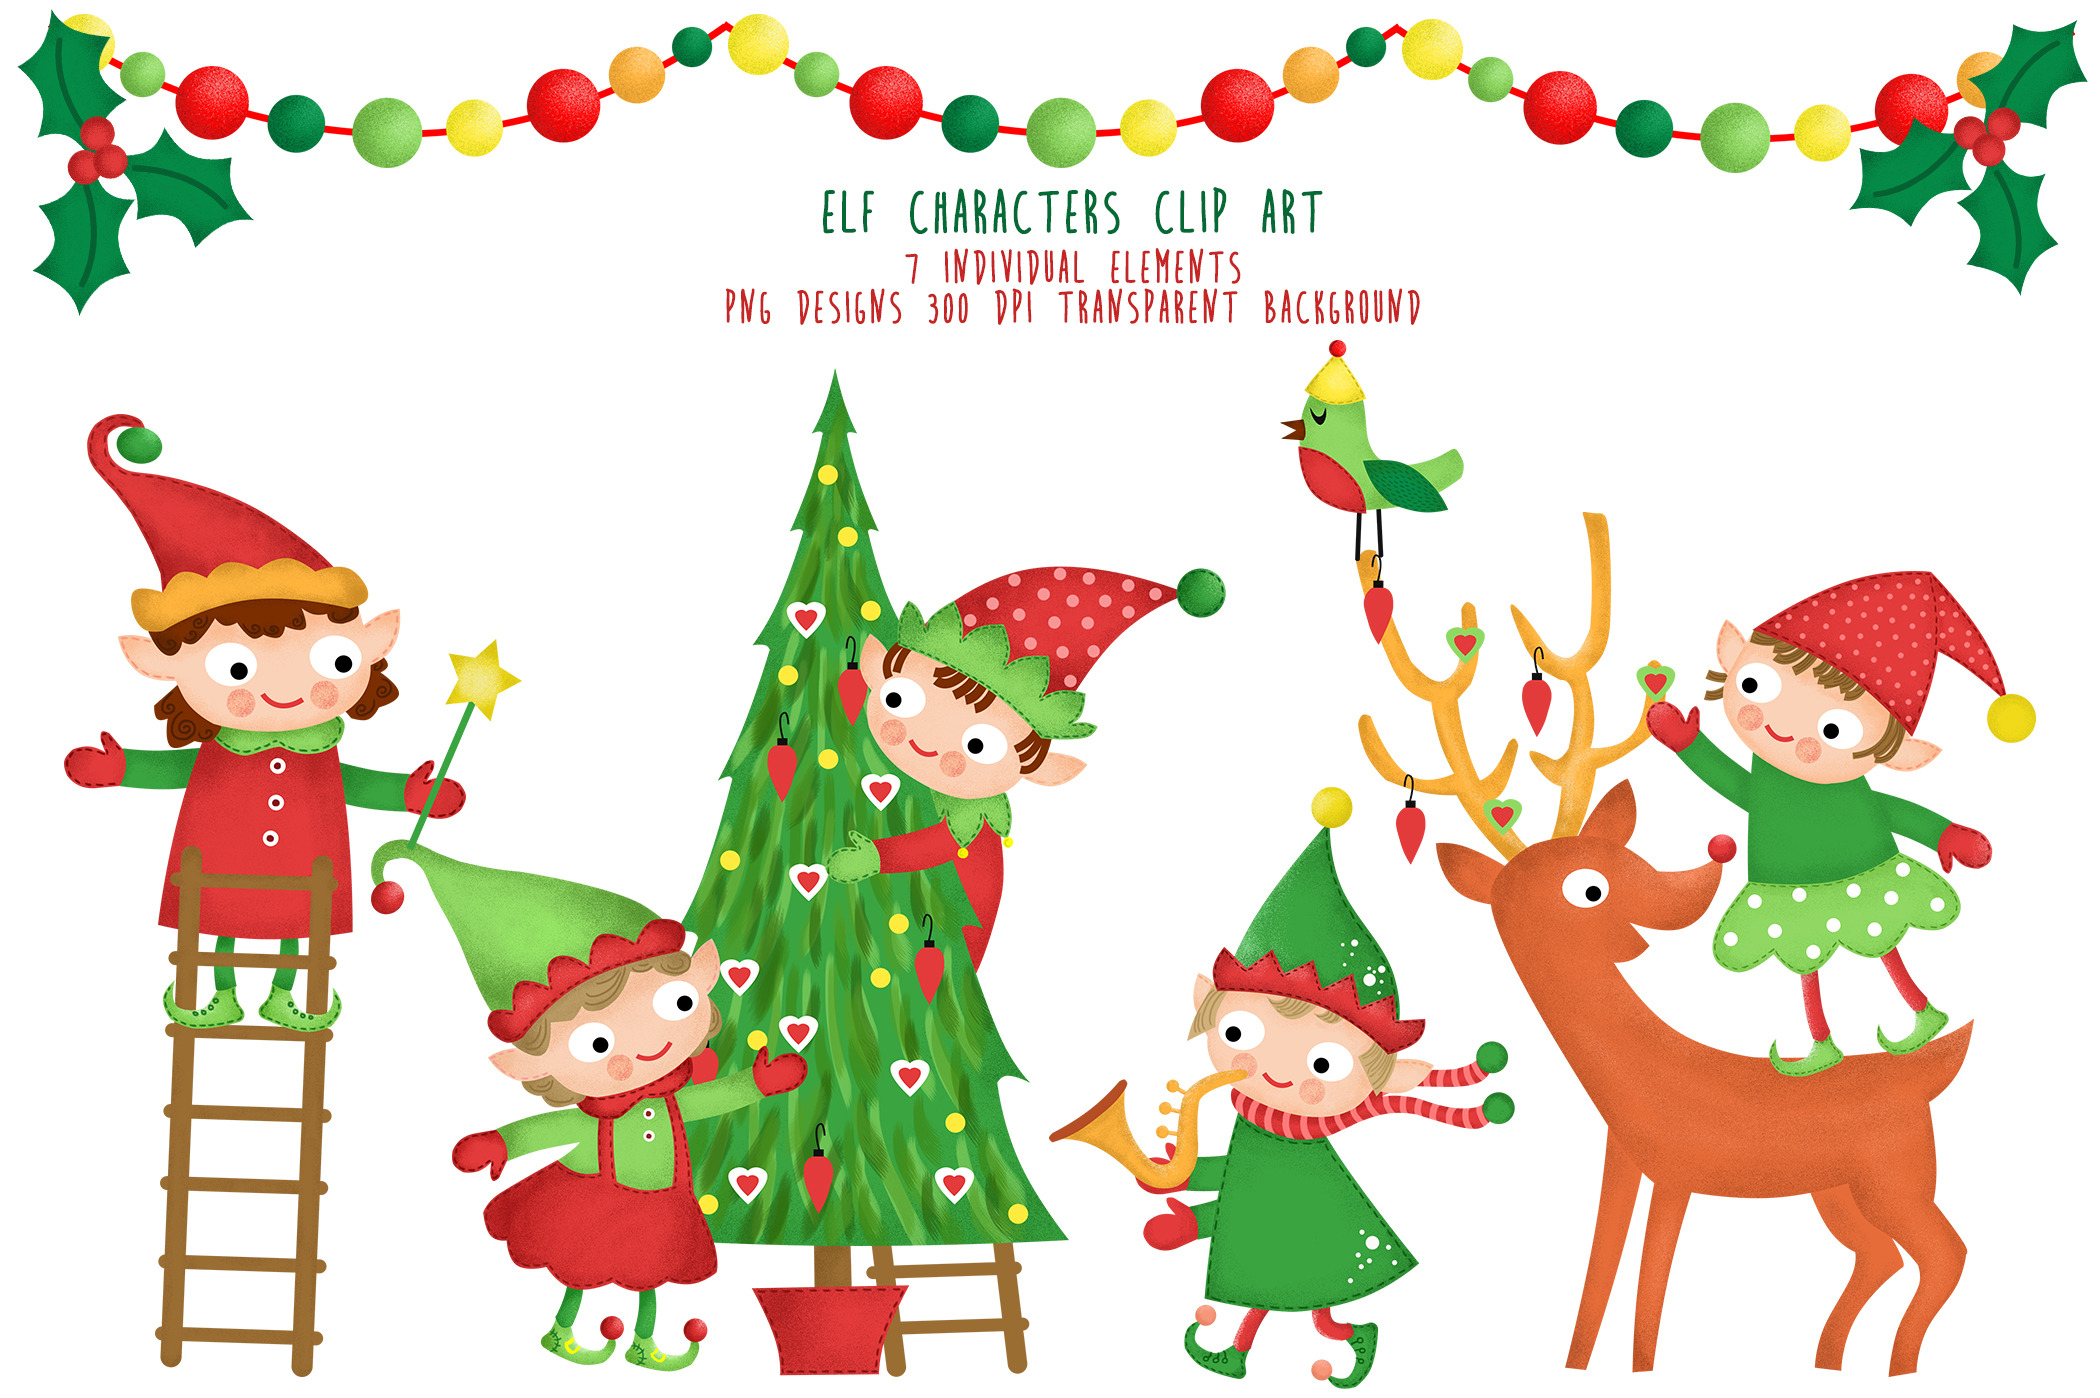 Elf Characters Clipart Santa Helpers ~ Illustrations ...